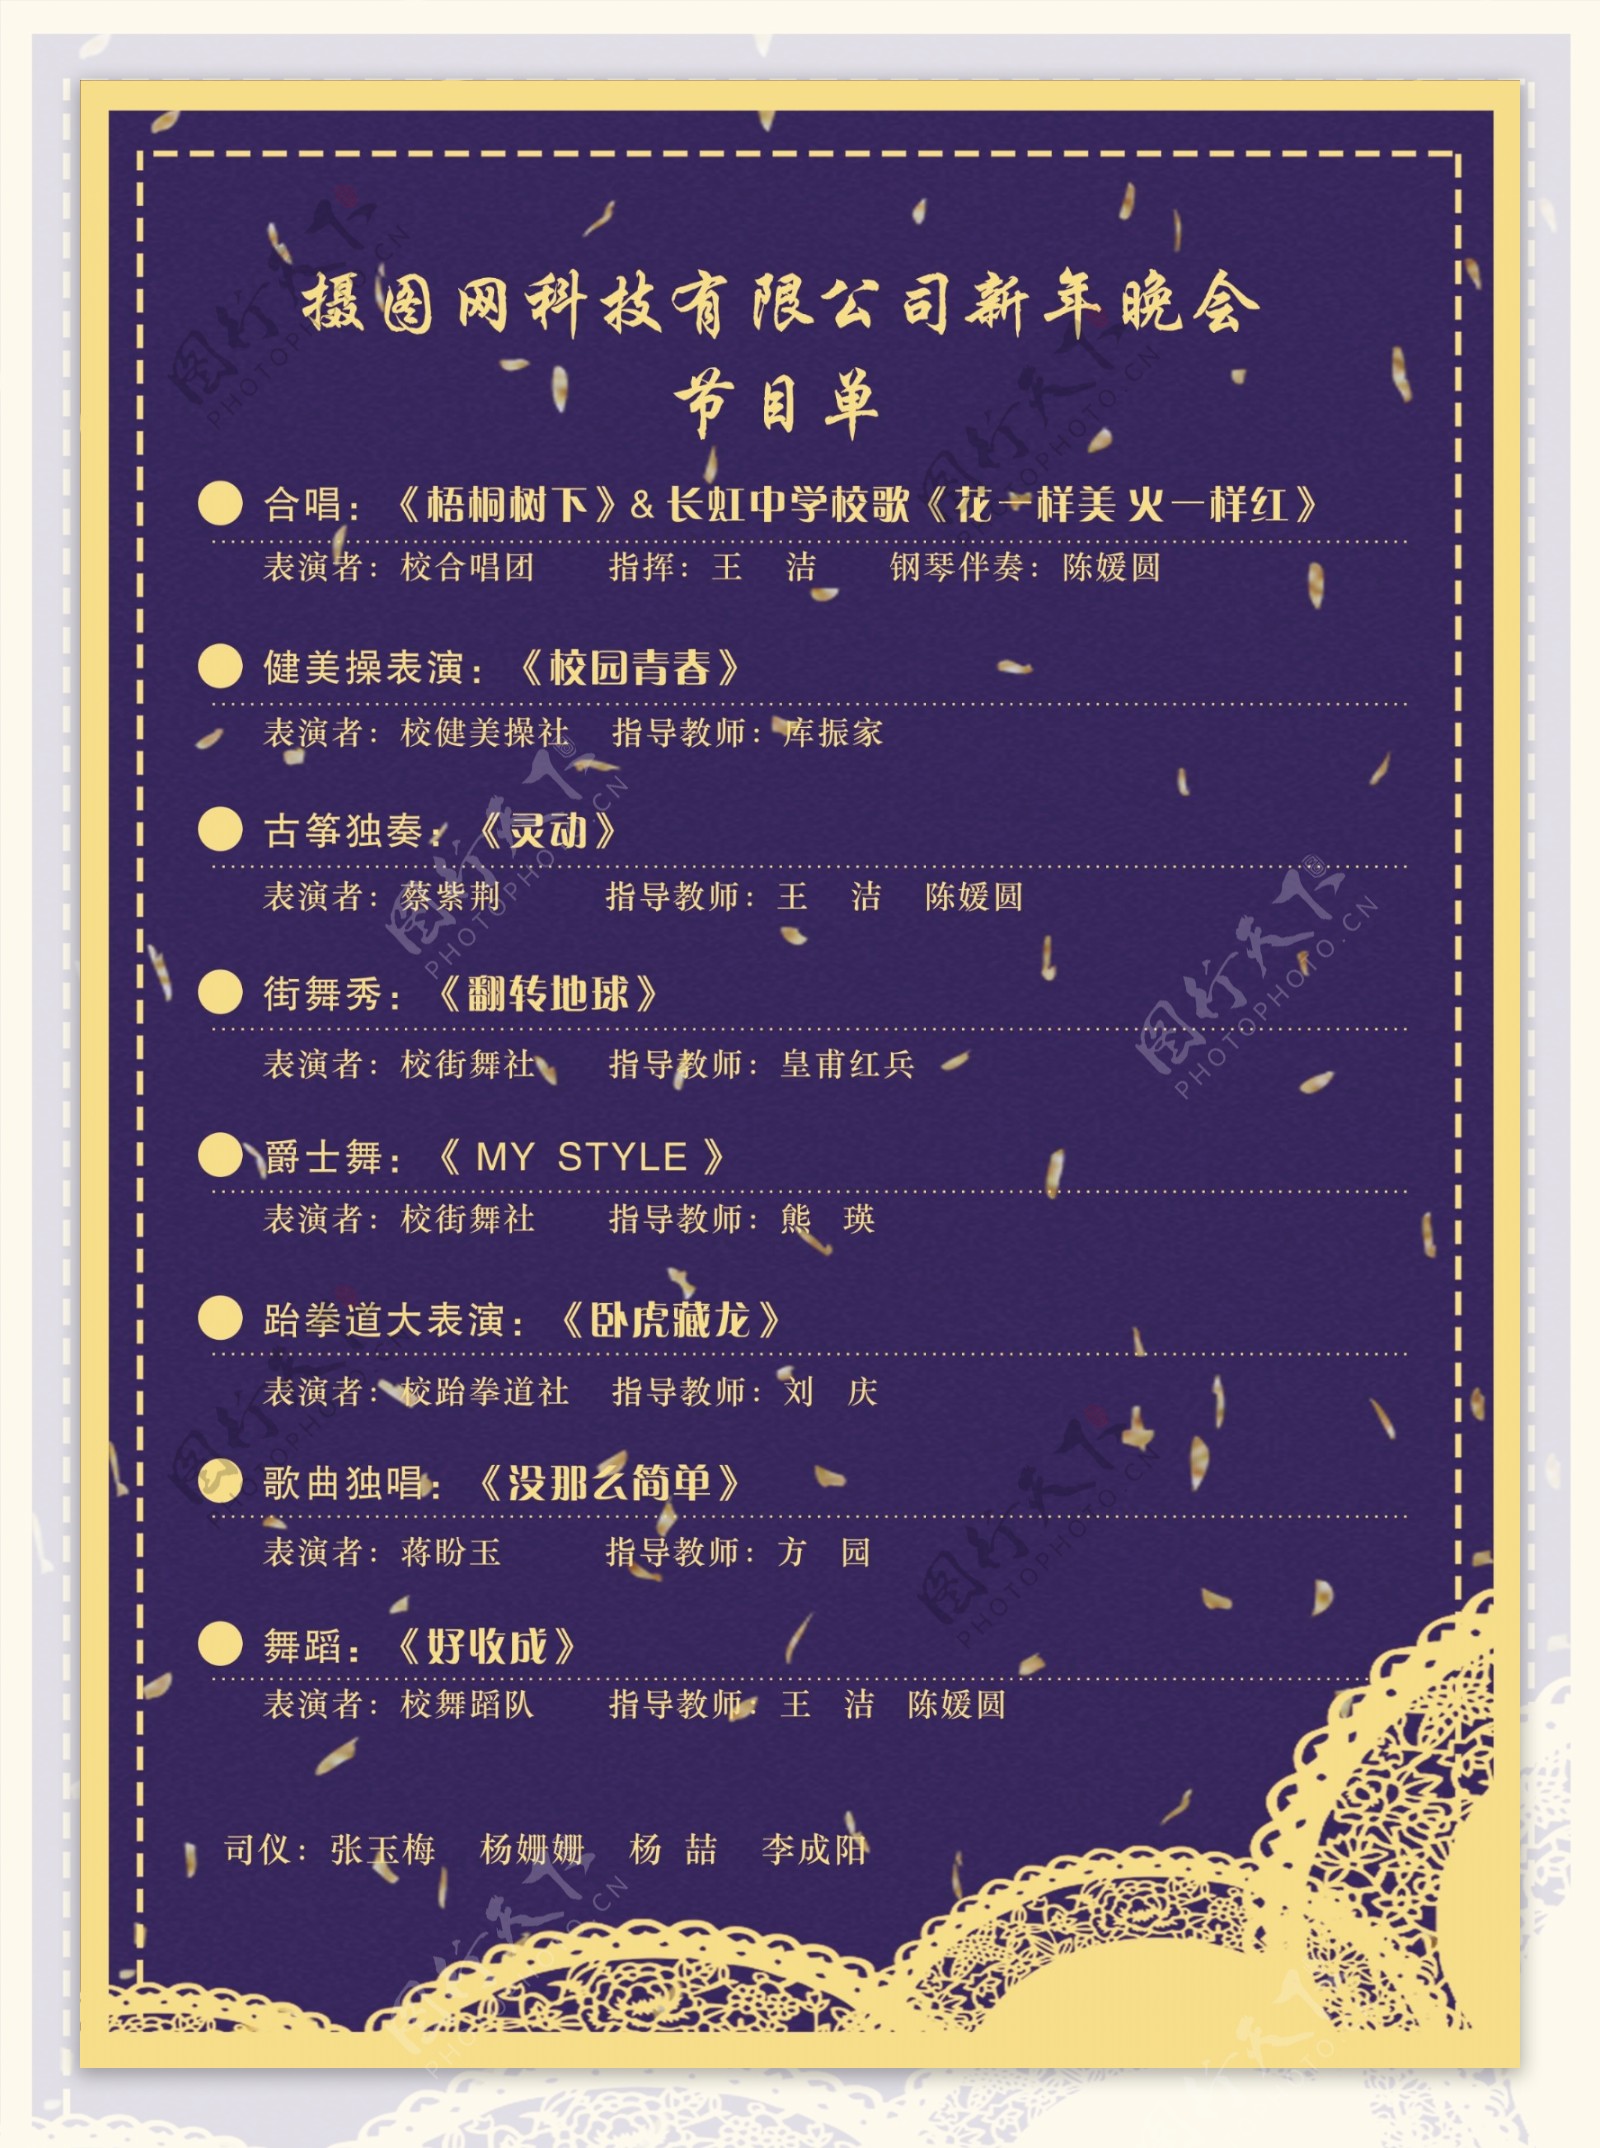 紫色2019企业新春晚会节目单宣传单